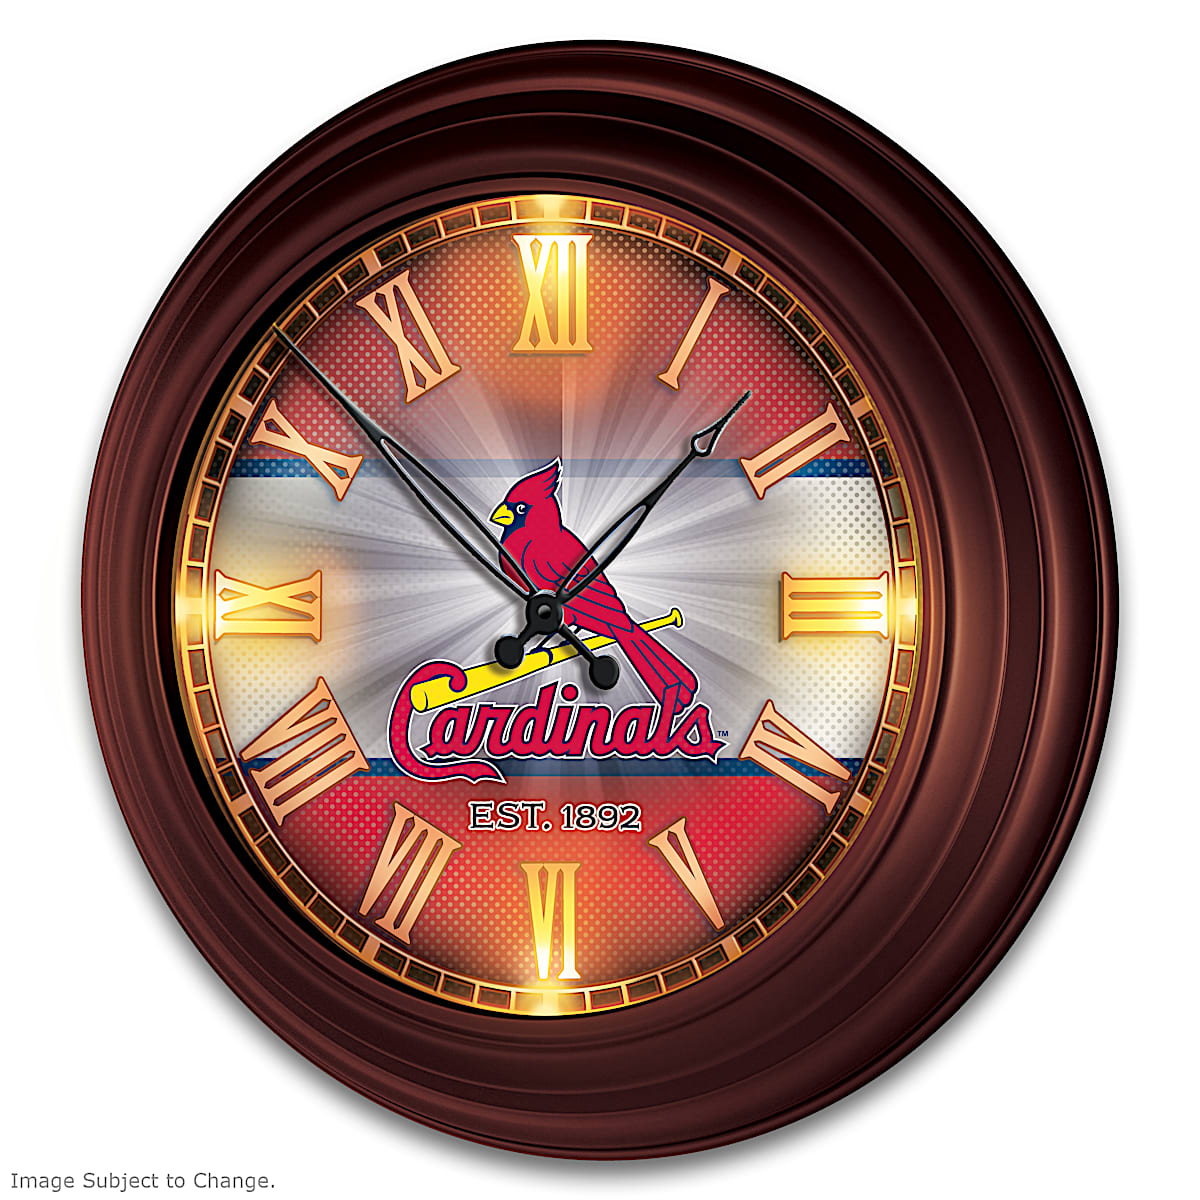 St. Louis Cardinals Imperial Oak Barrel Clock